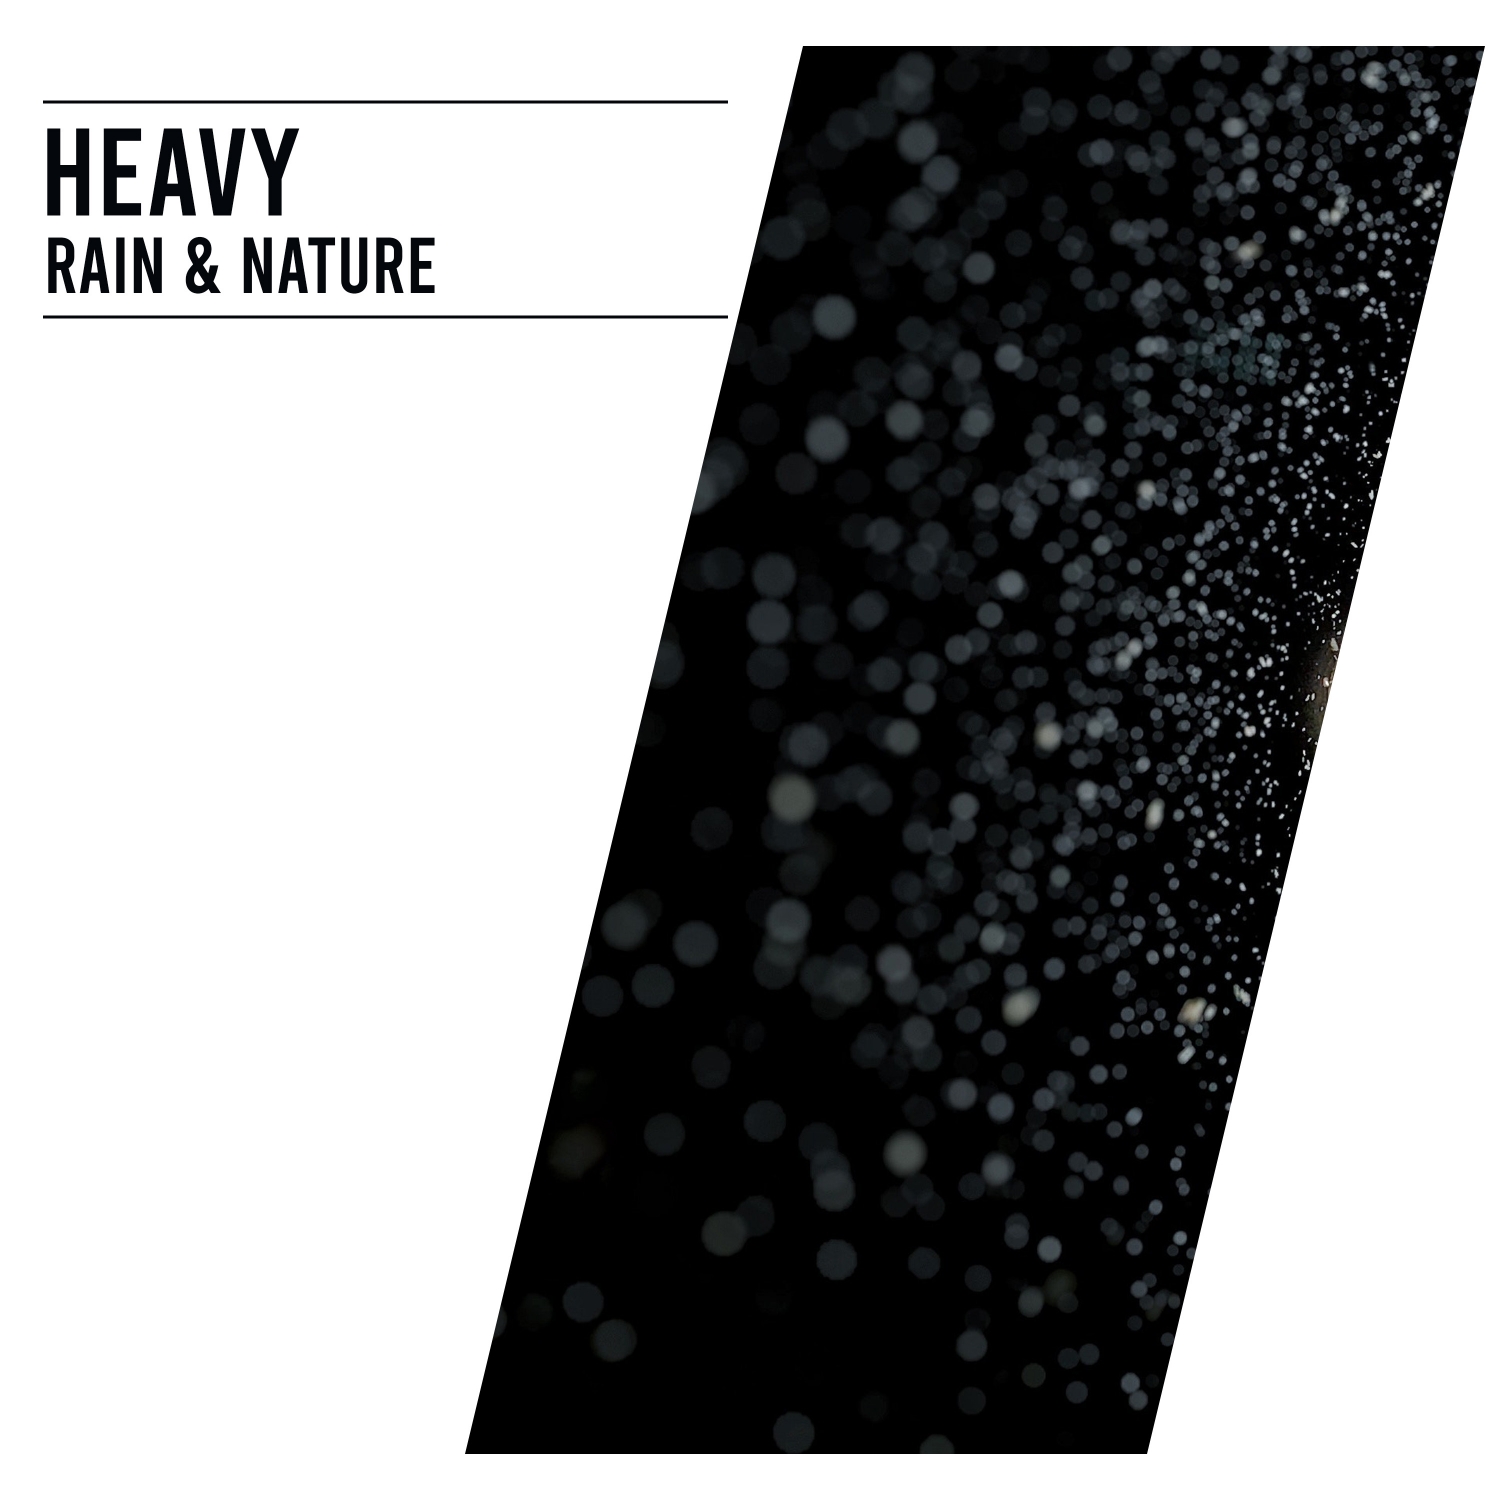 15 Heavy Rain & Nature Sounds